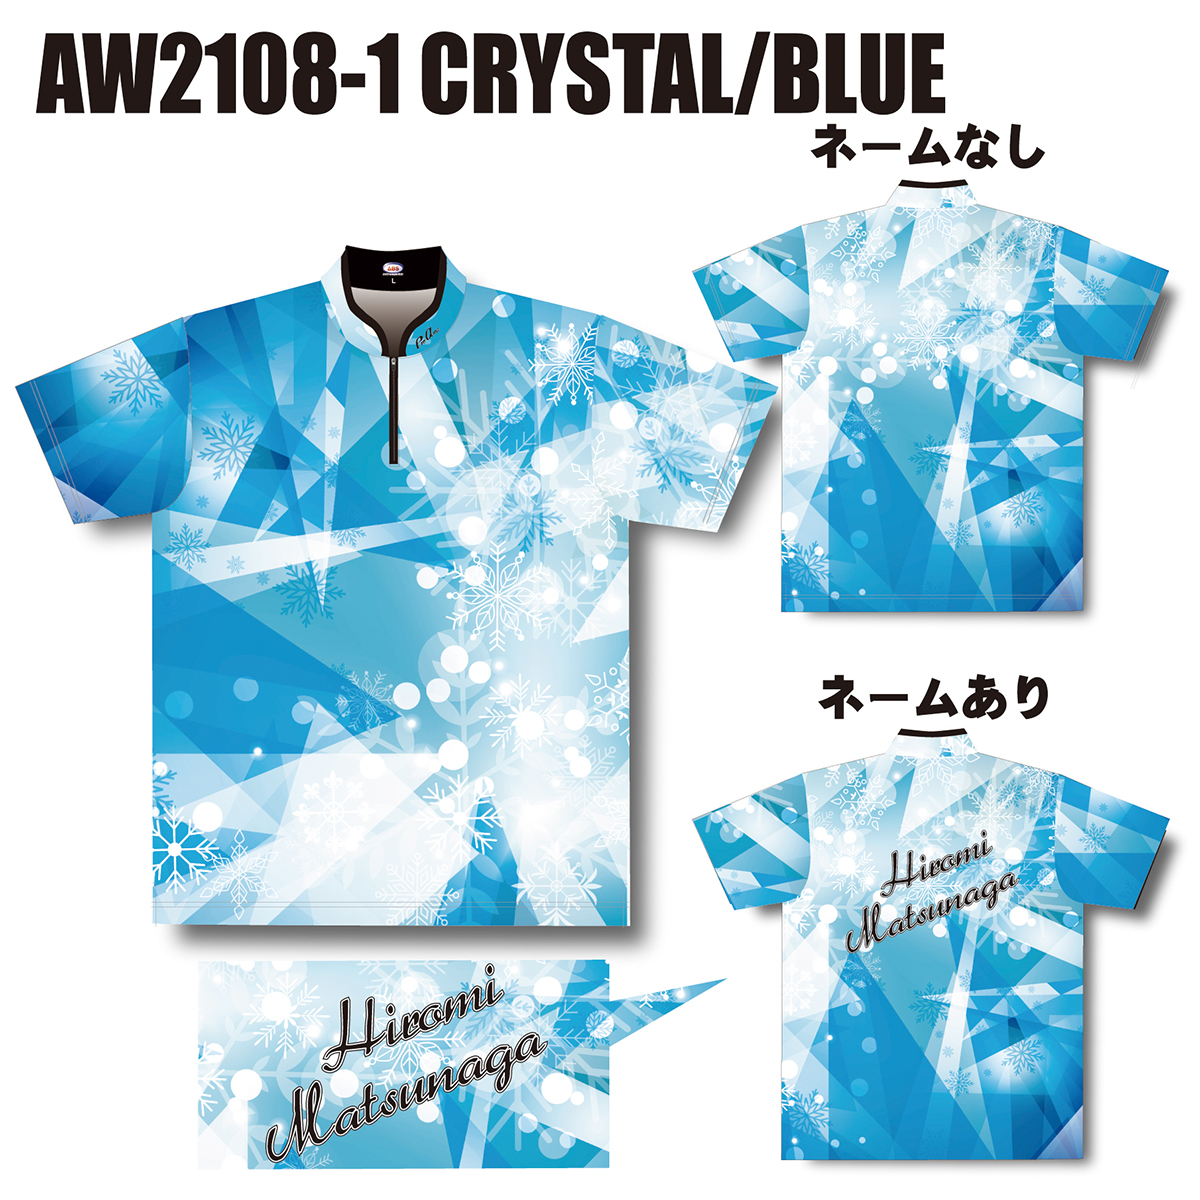 2021ウインターモデル(AW2108-1 CRYSTAL/BLUE)